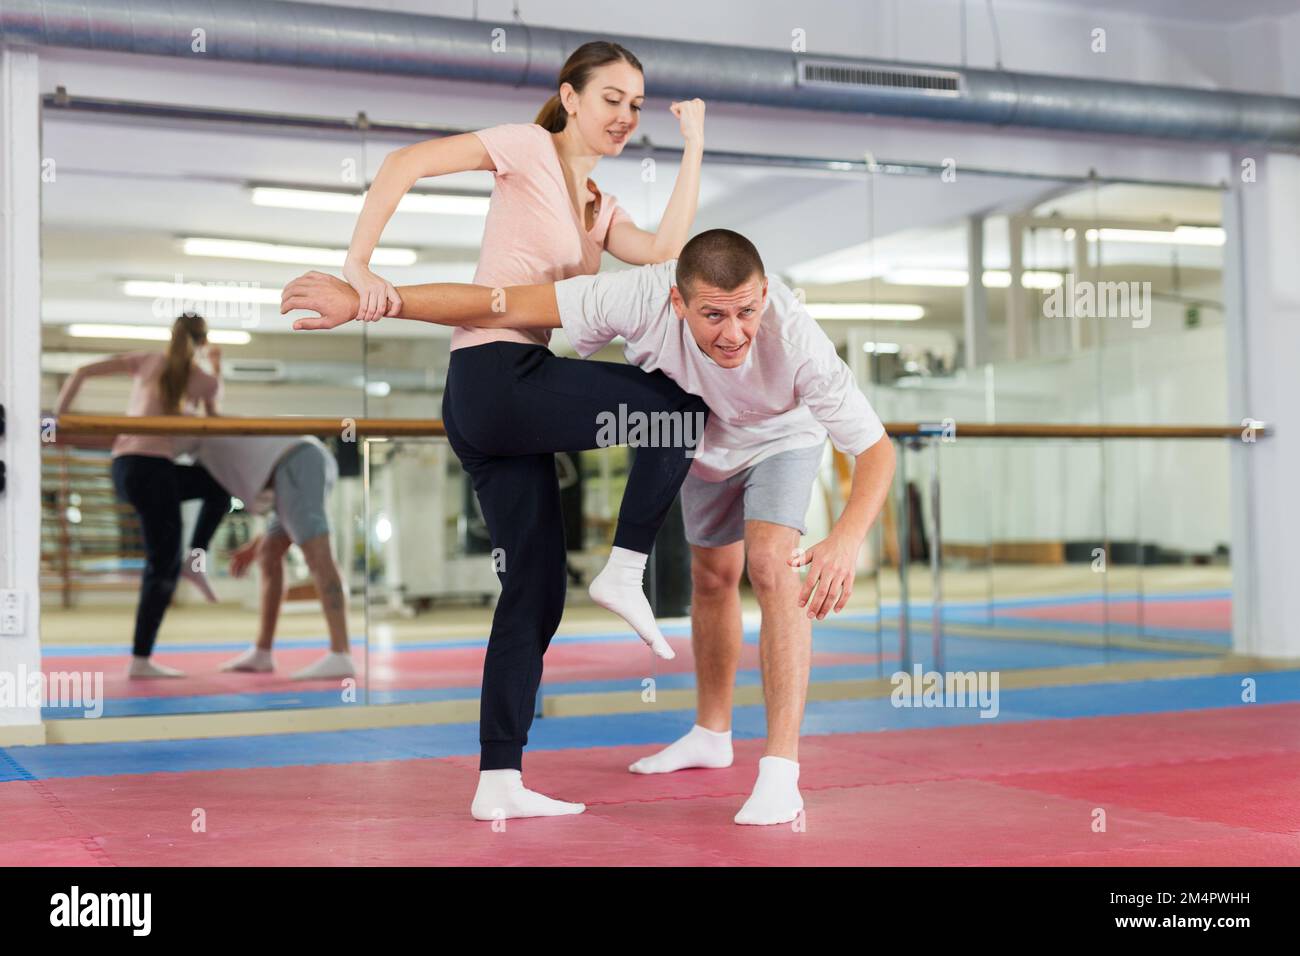 Chica que practica ataques de codo y rodilla con sujeción de brazo a compañero de gorring masculino en el gimnasio Foto de stock